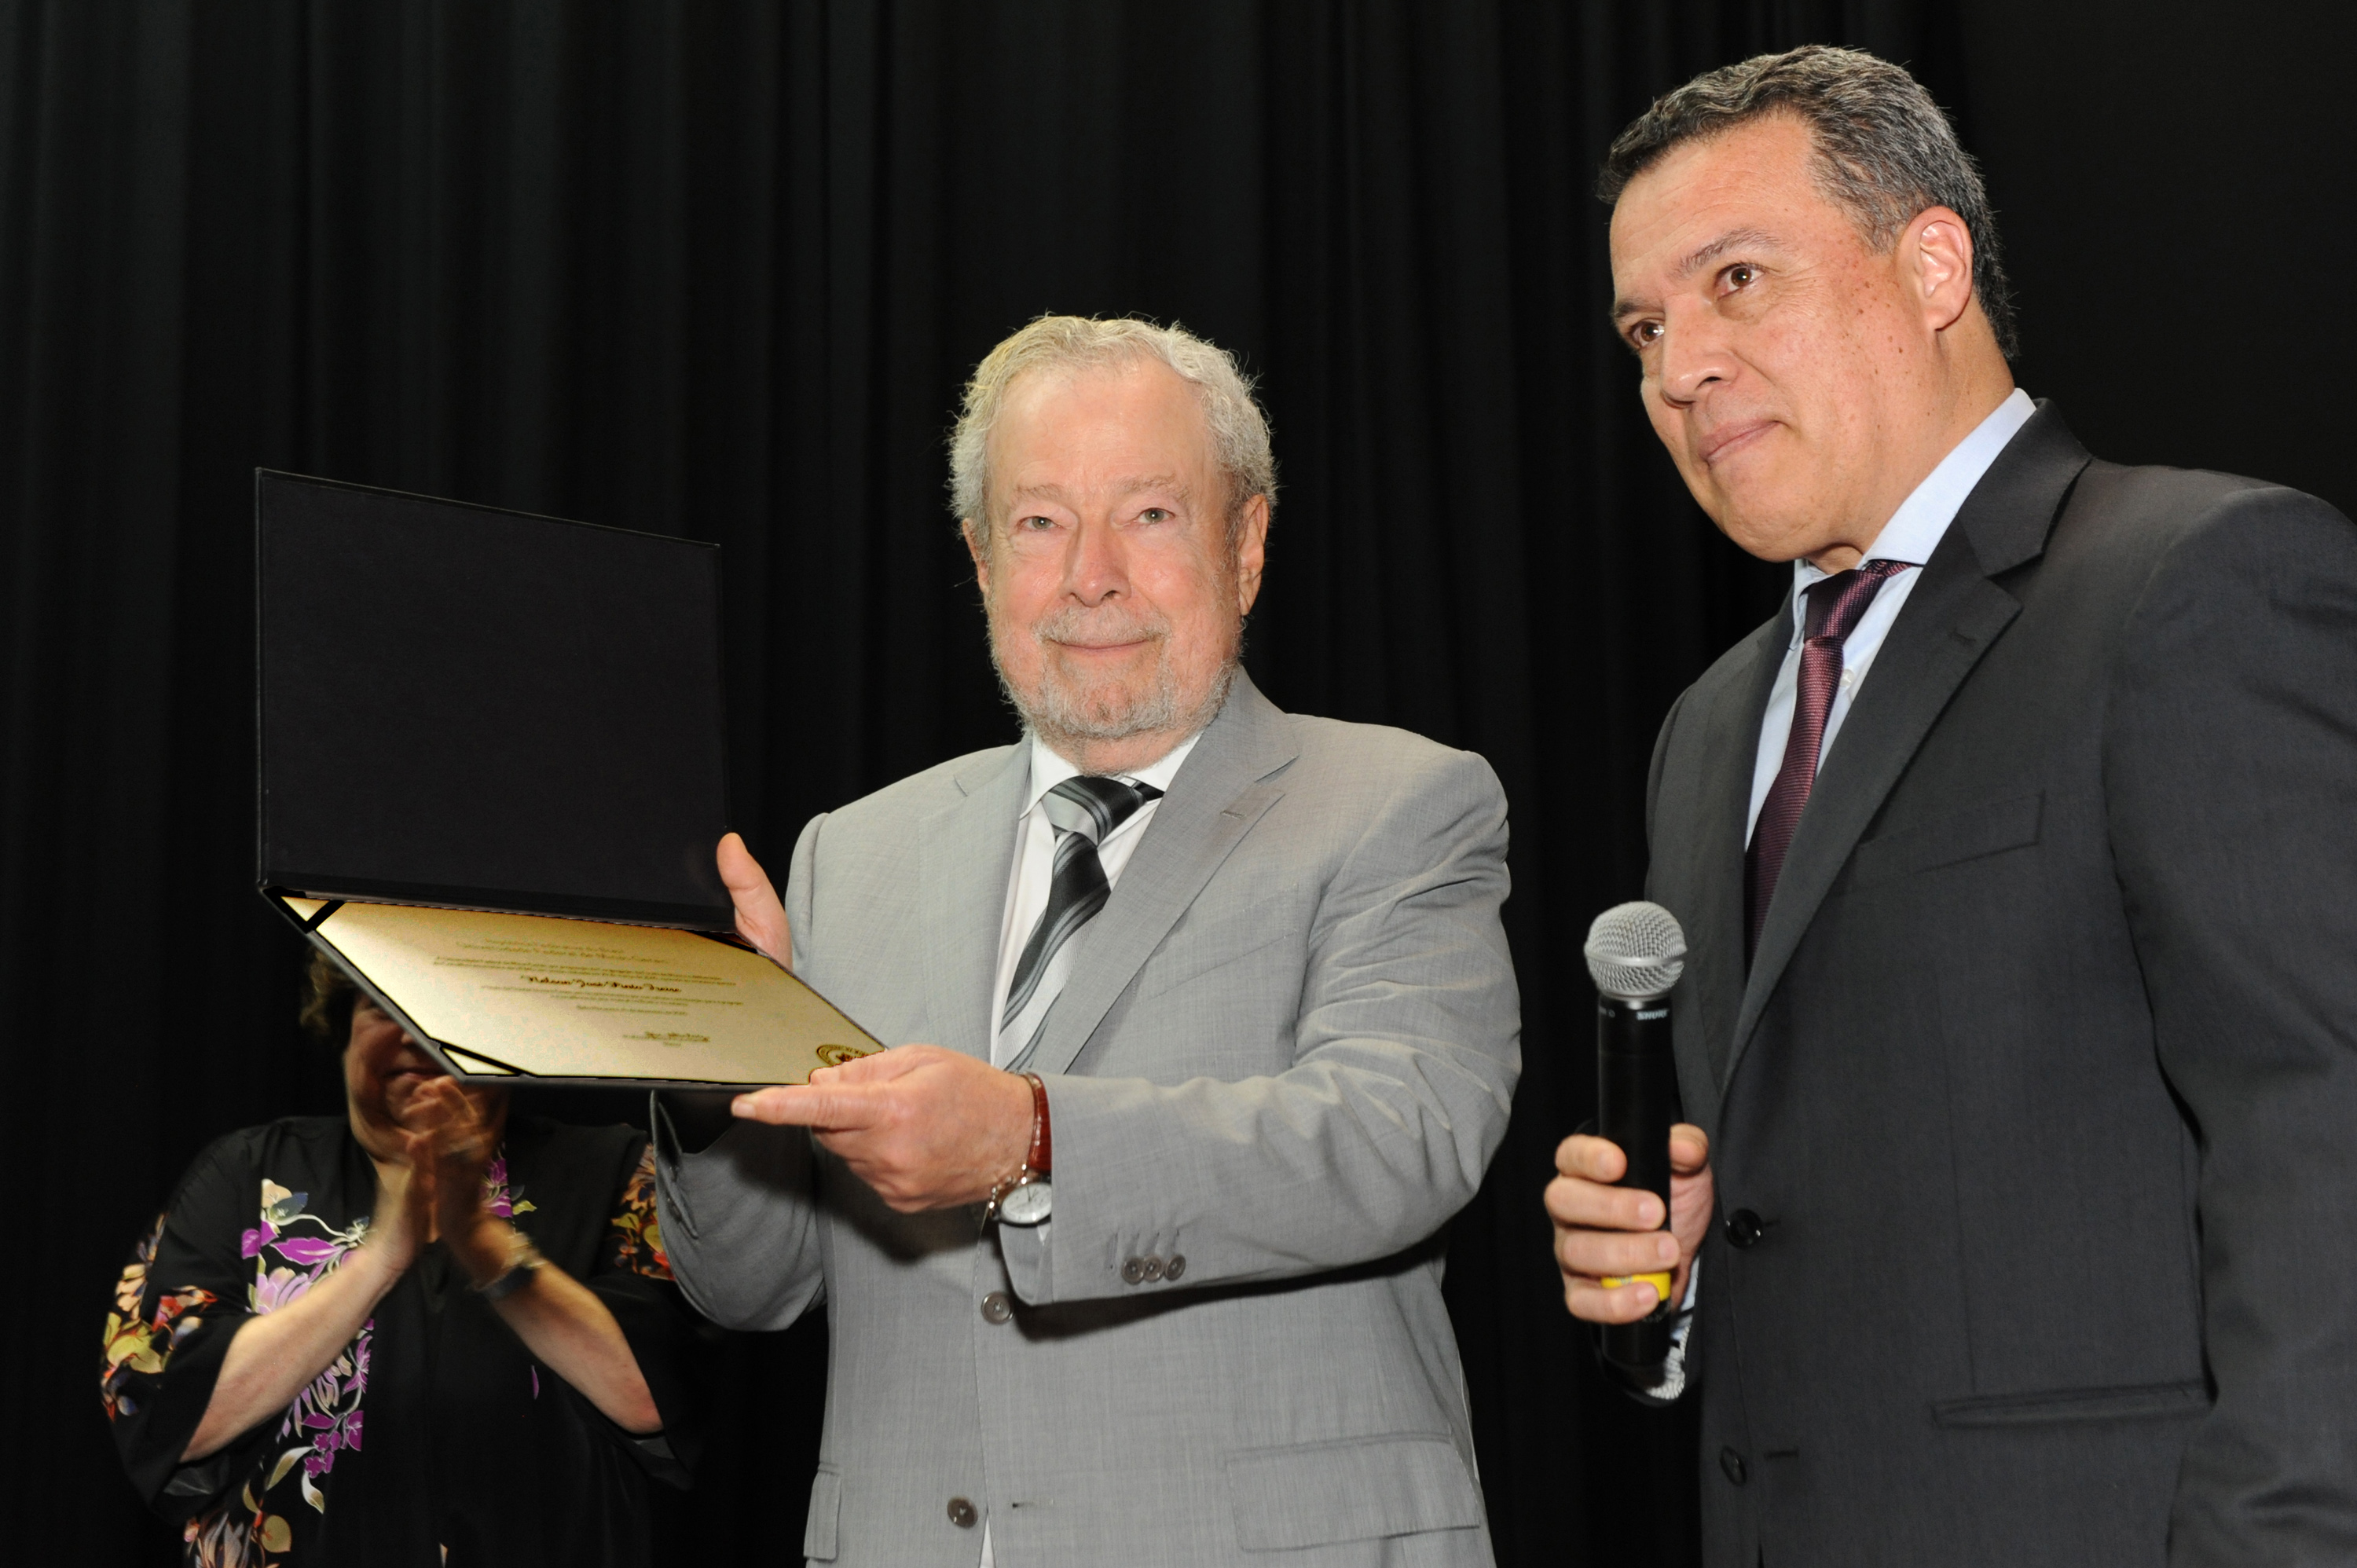 Nelson Freire recebeu o diploma das mãos do reitor Jaime Ramírez. Fotos: Marina Gontijo / UFMG